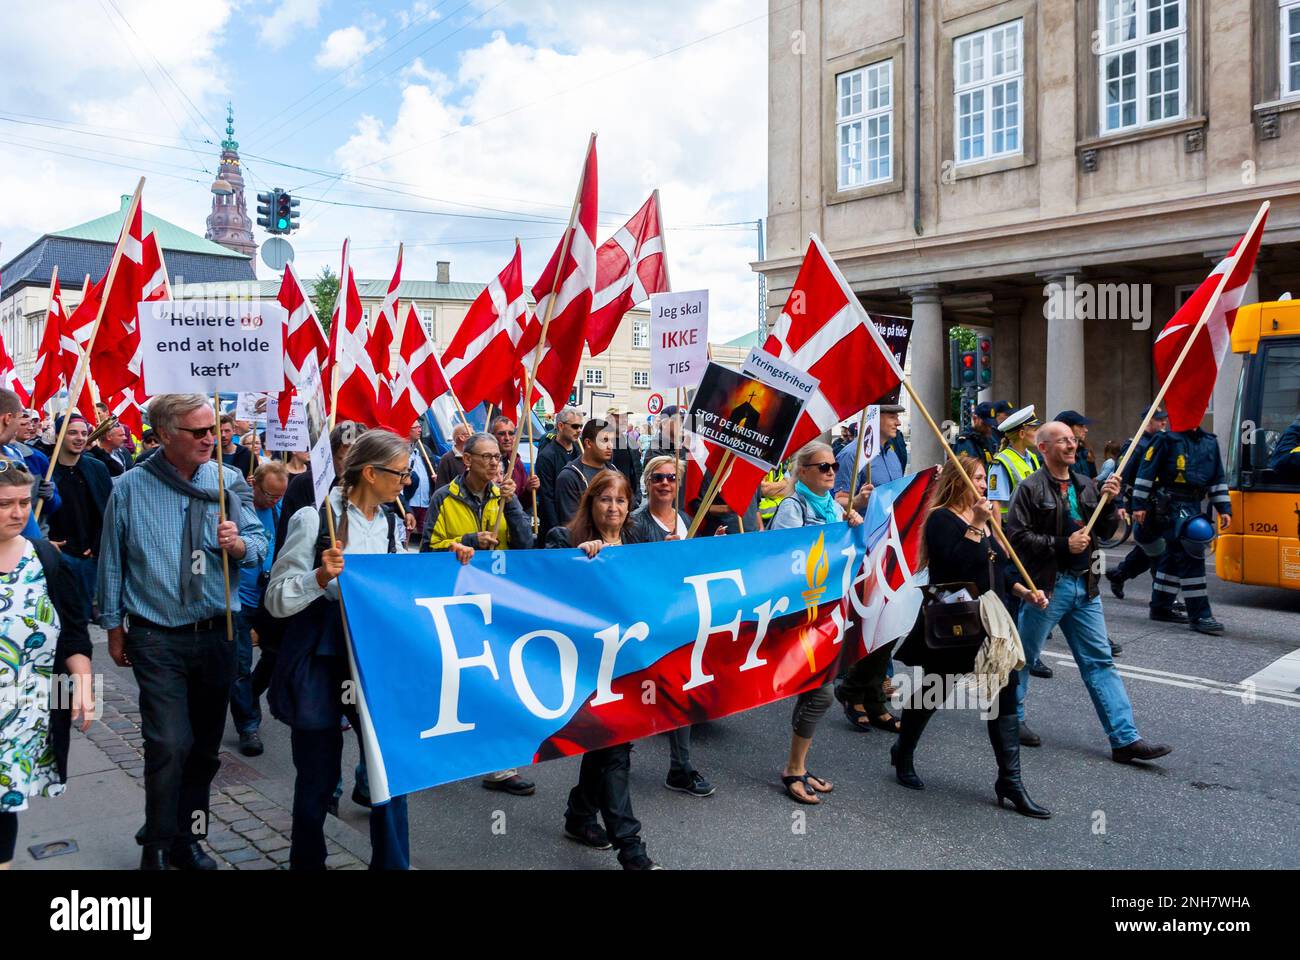 Kopenhagen, Dänemark, Menschenmenge, demonstriert für die politische Partei der extremen Rechten, Anti-Immigration, auf der Straße, mit Flaggen Stockfoto